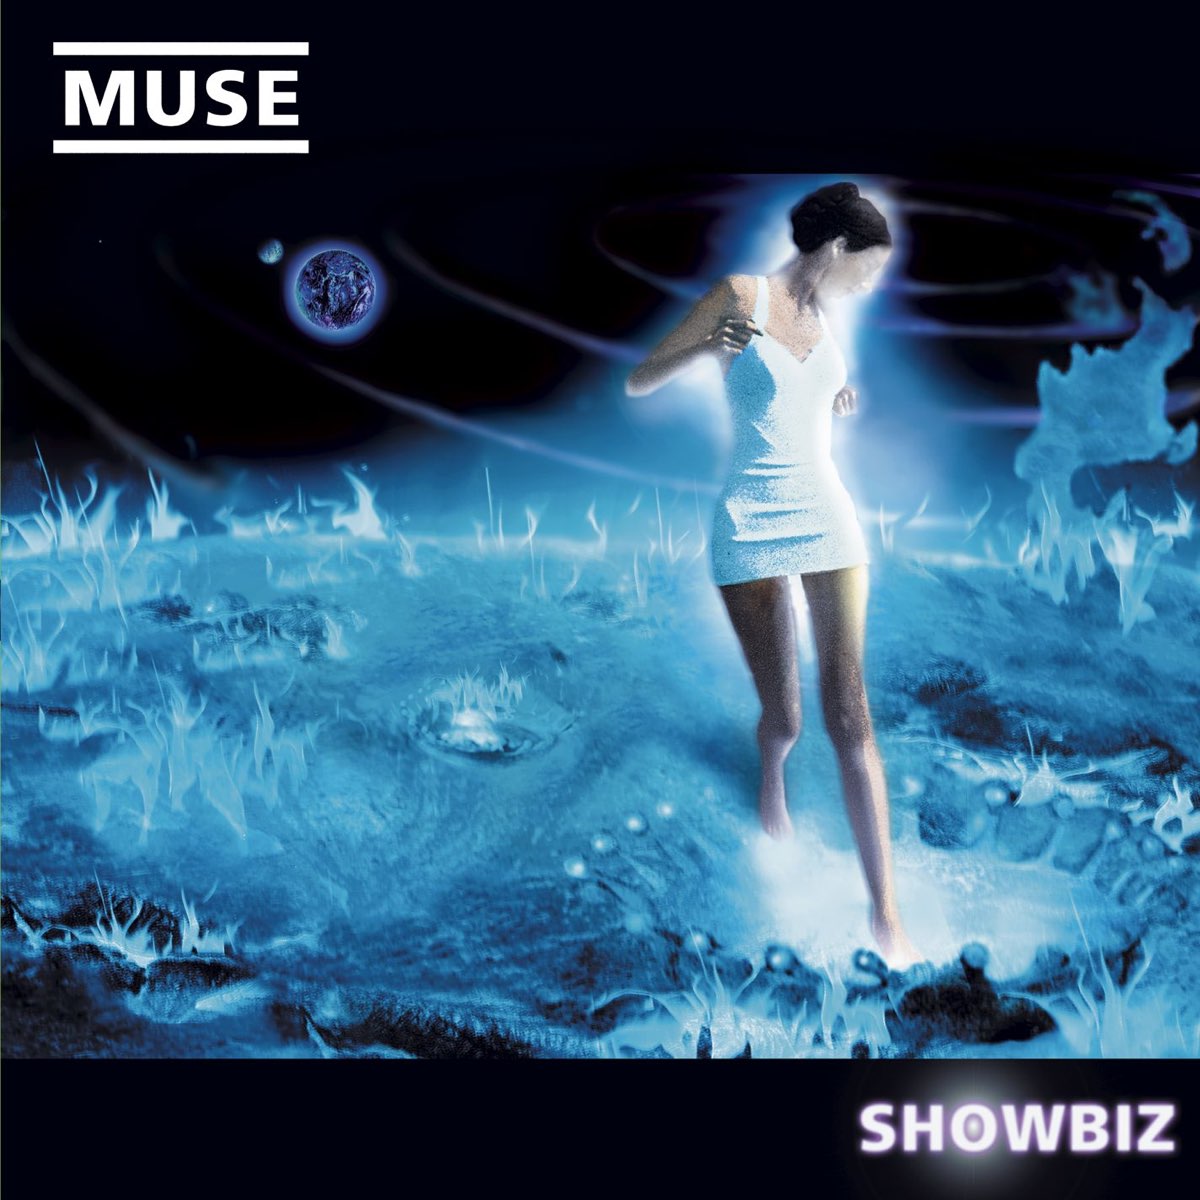 Muse Showbiz cover artwork